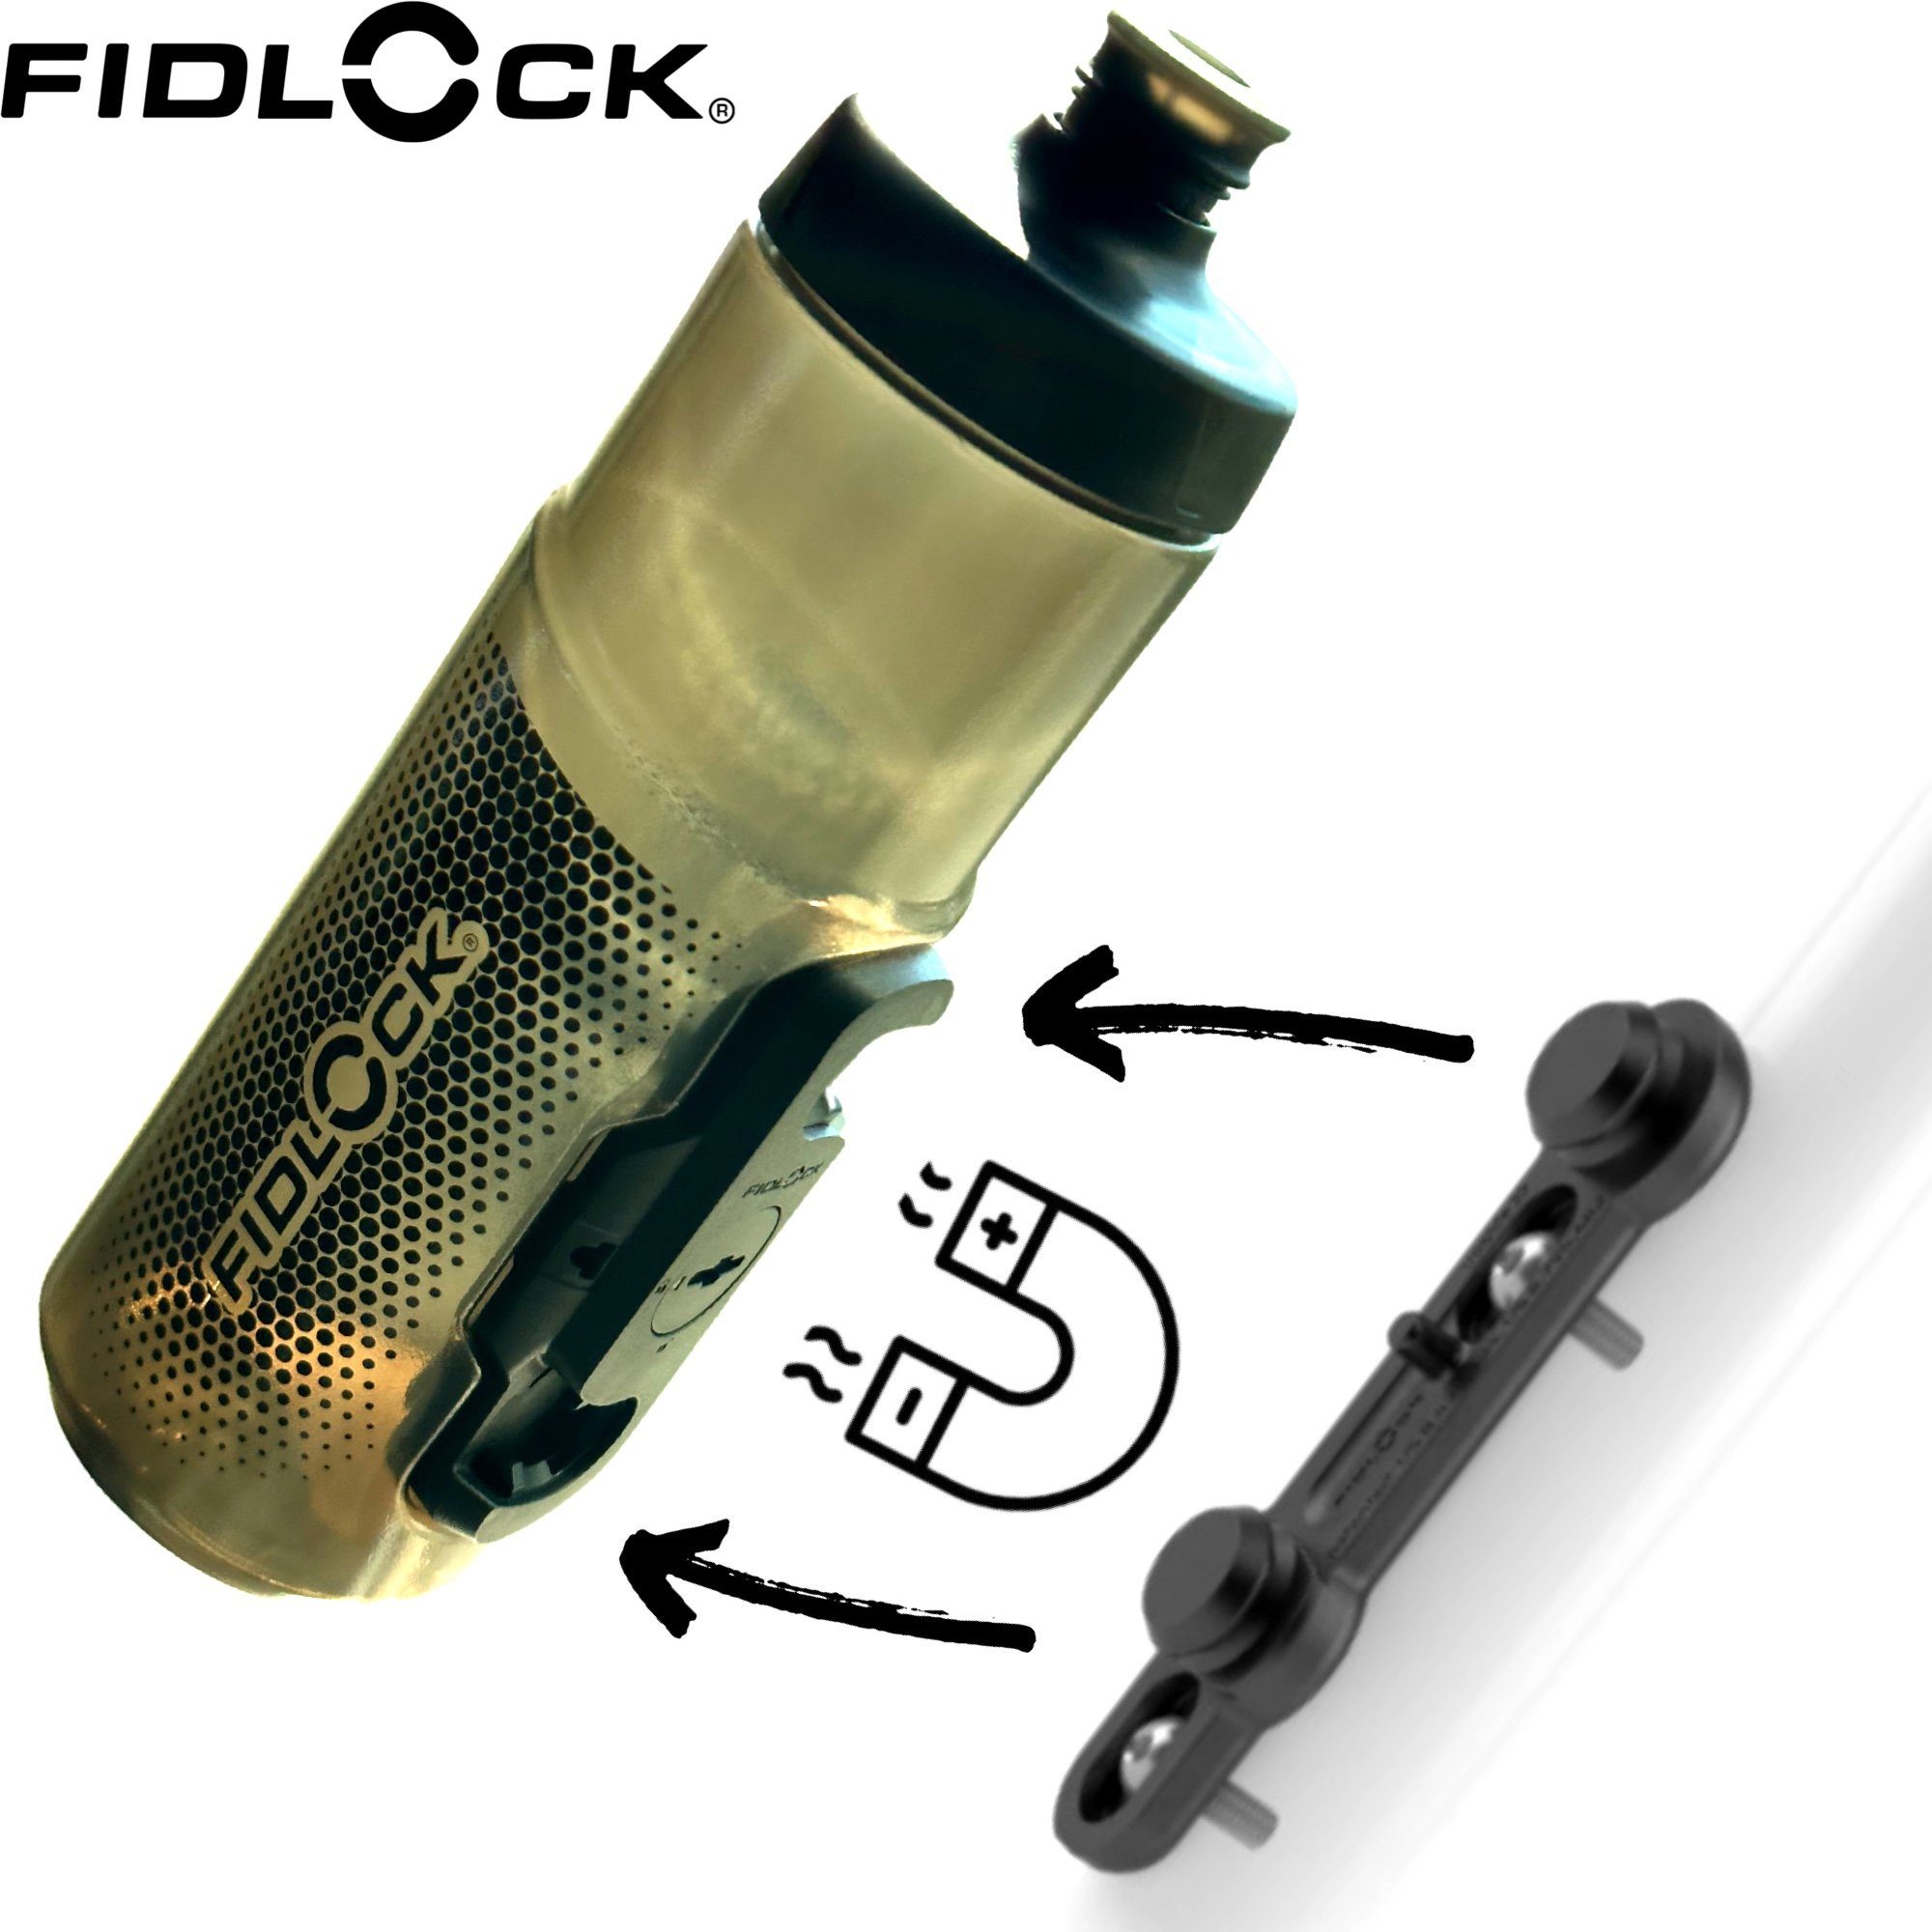 Fidlock Fahrrad-Flaschenhalter Fidlock Twist uni connector + bike base  Trinkflaschenhalter